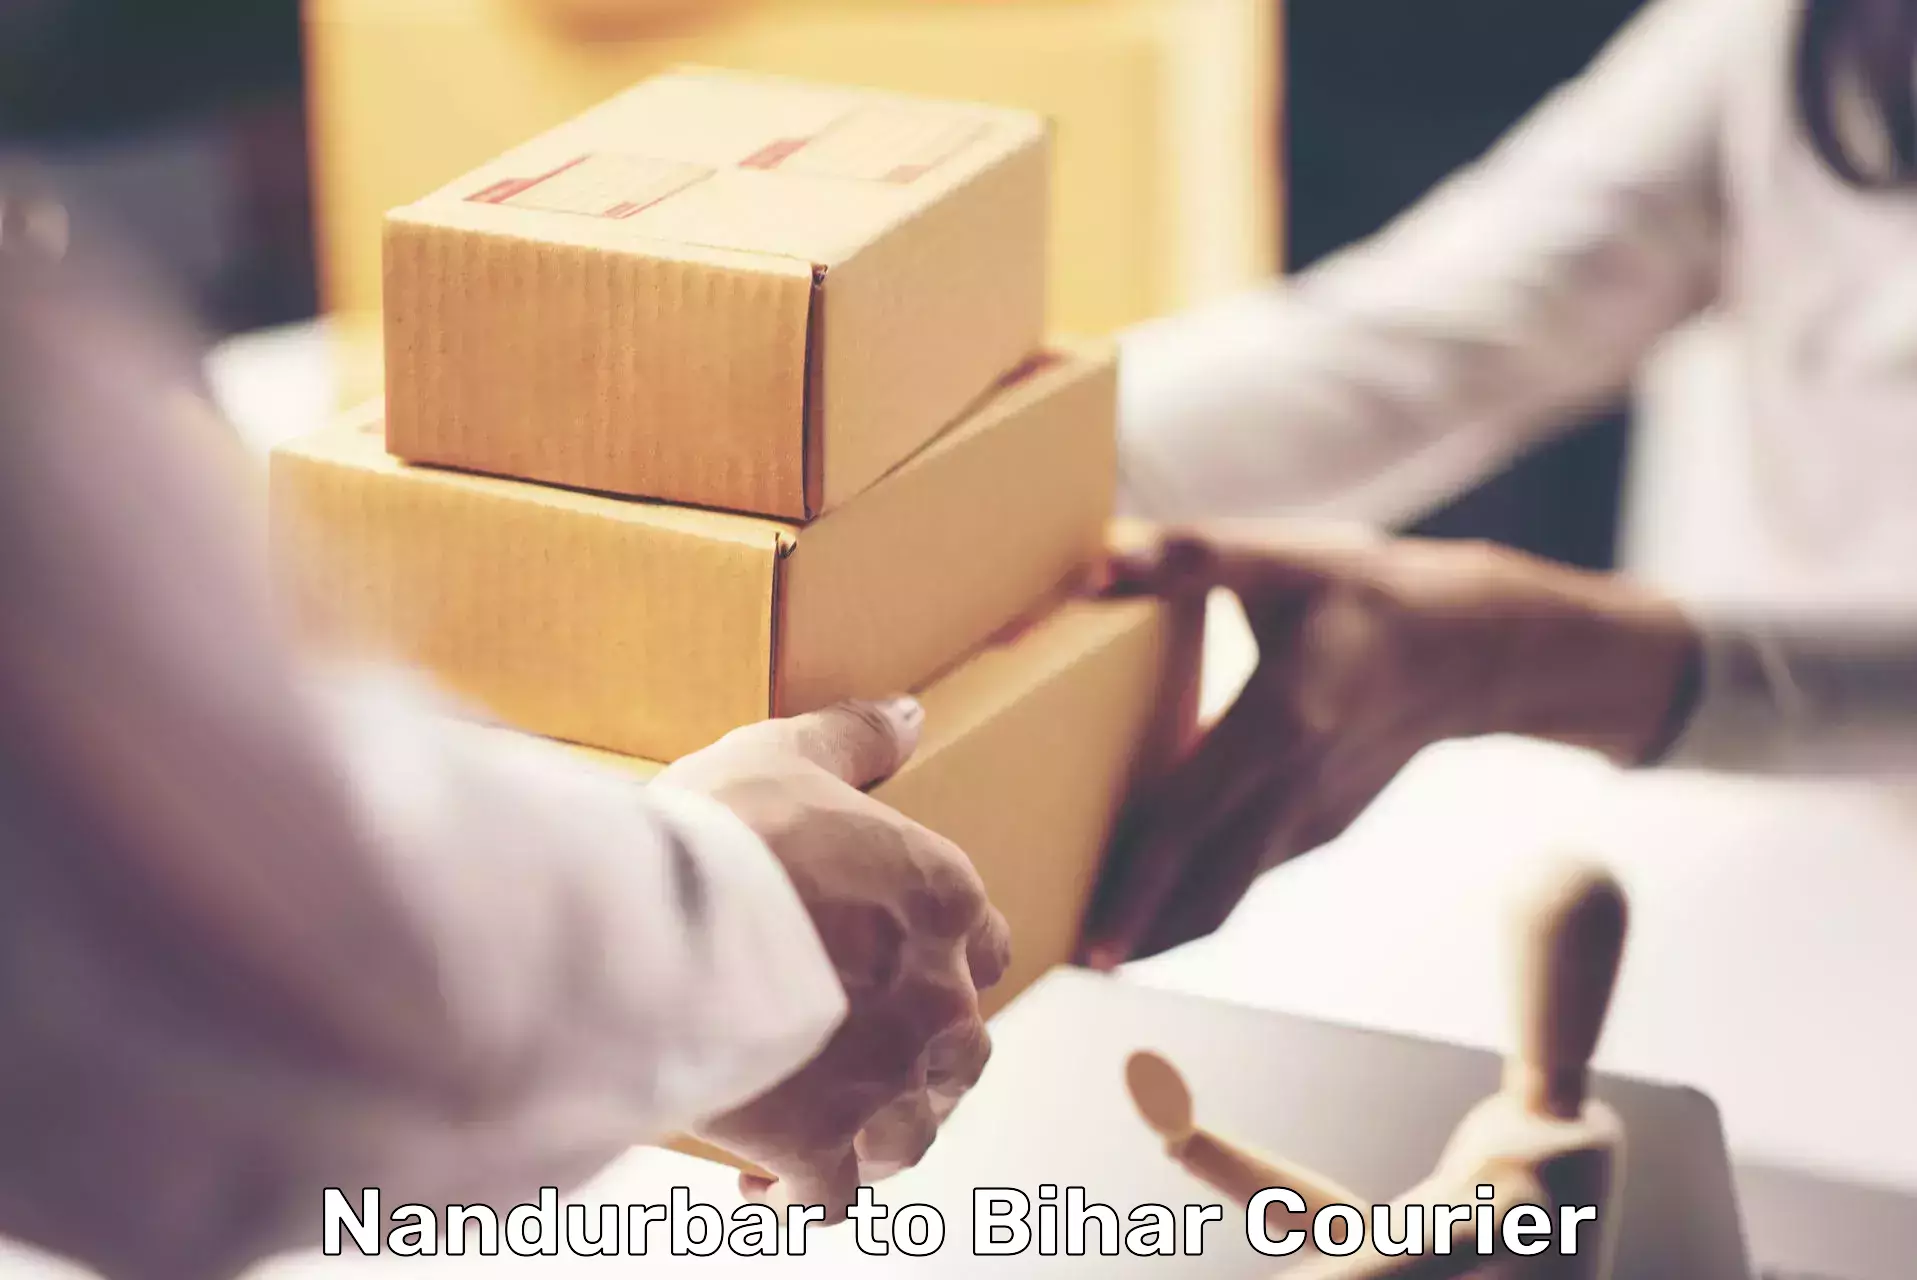 Customer-focused courier Nandurbar to Kuchaikote